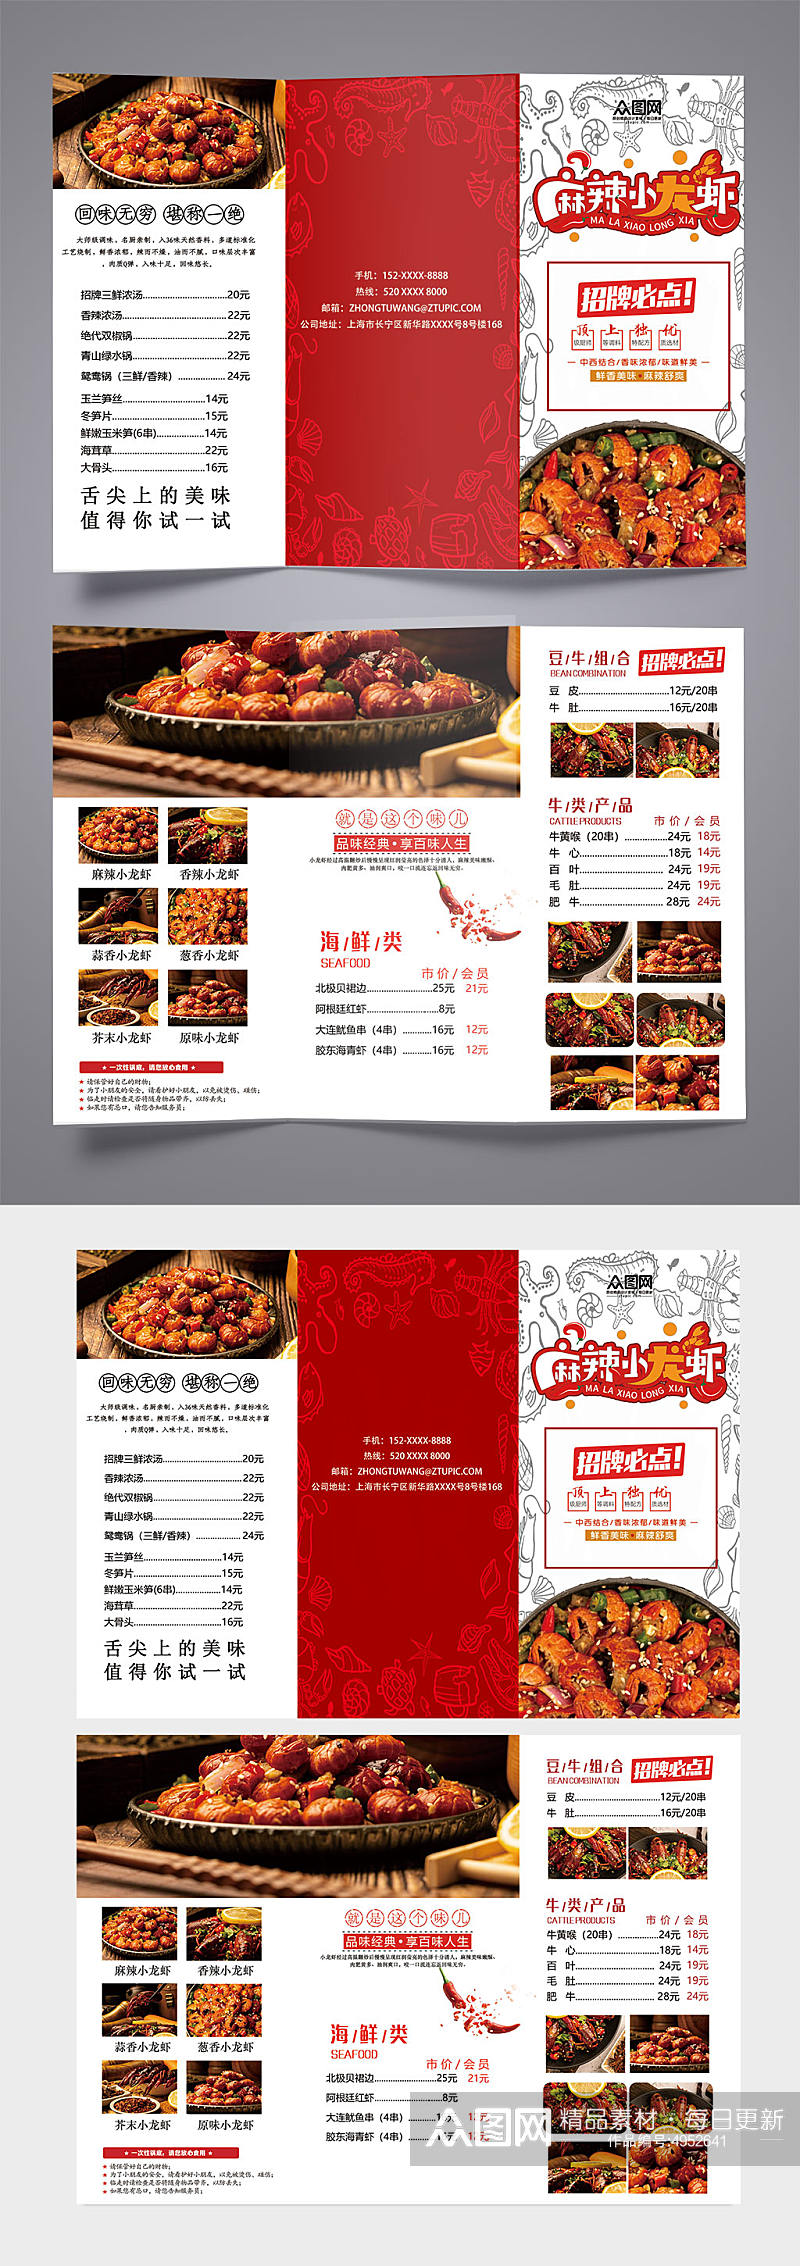 招牌麻辣小龙虾美食餐饮三折页菜单素材